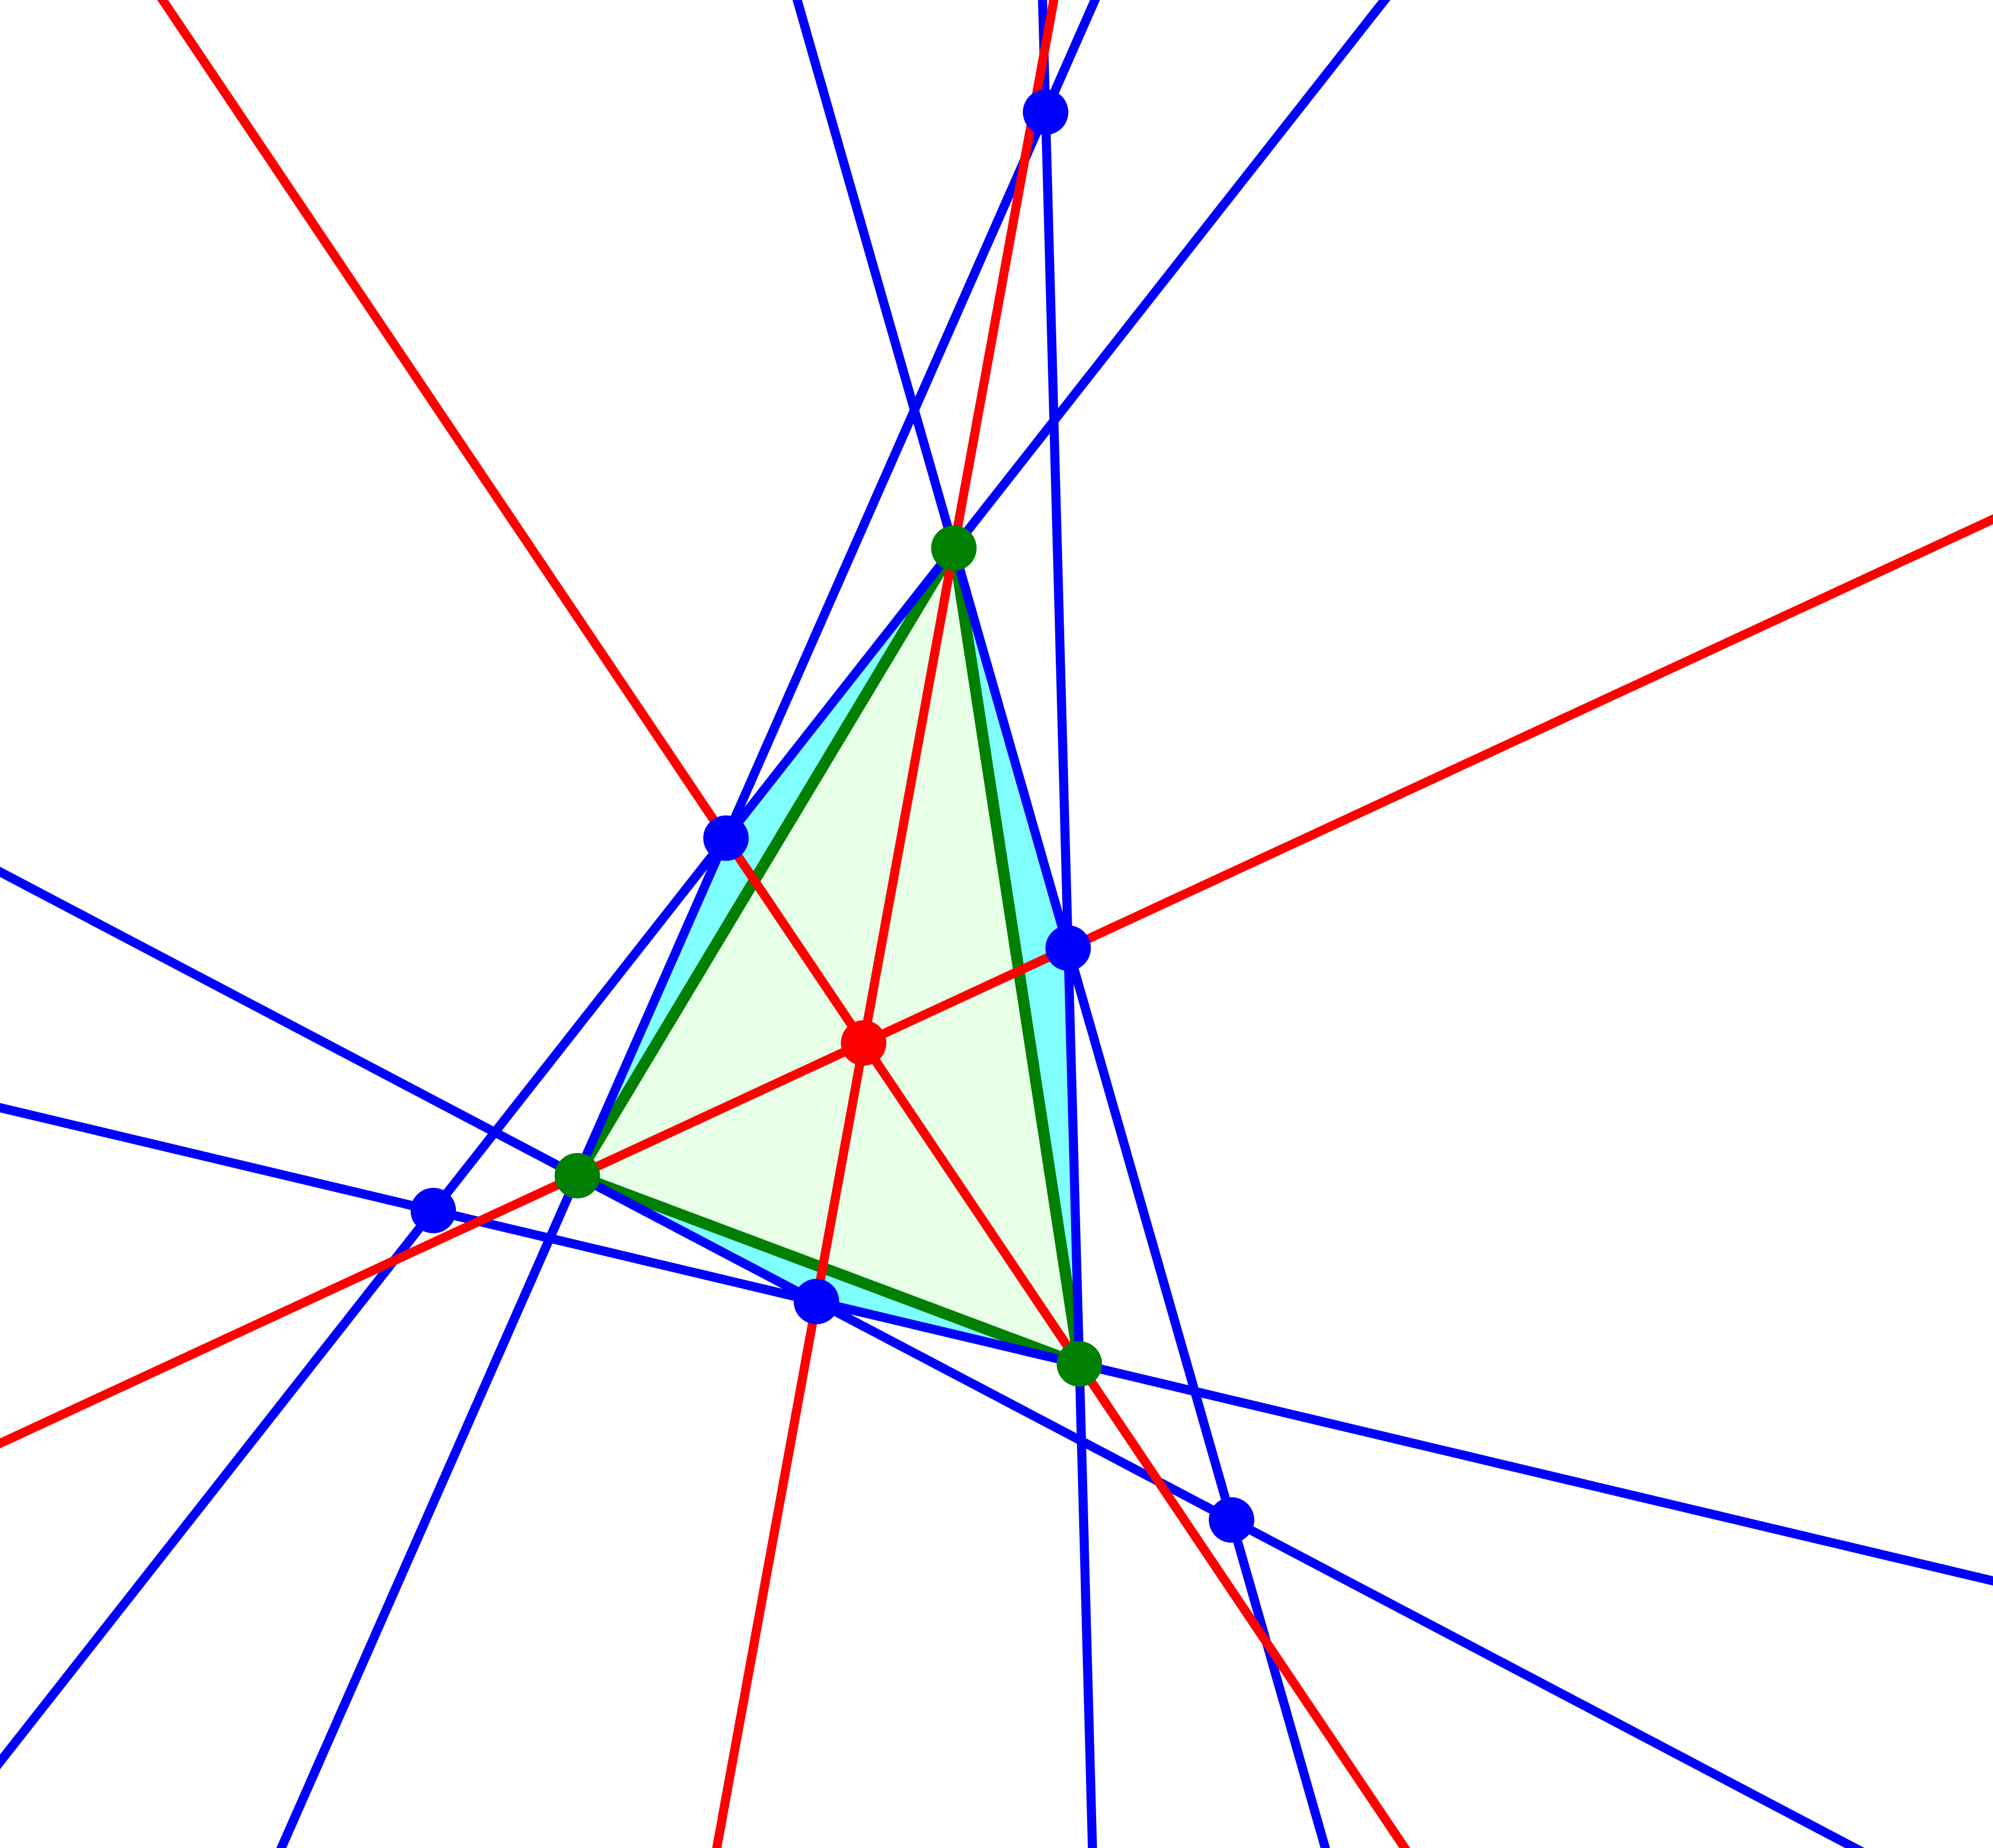 Ein Bild, das Beitrag, farbig, Laser enthält.

Automatisch generierte Beschreibung